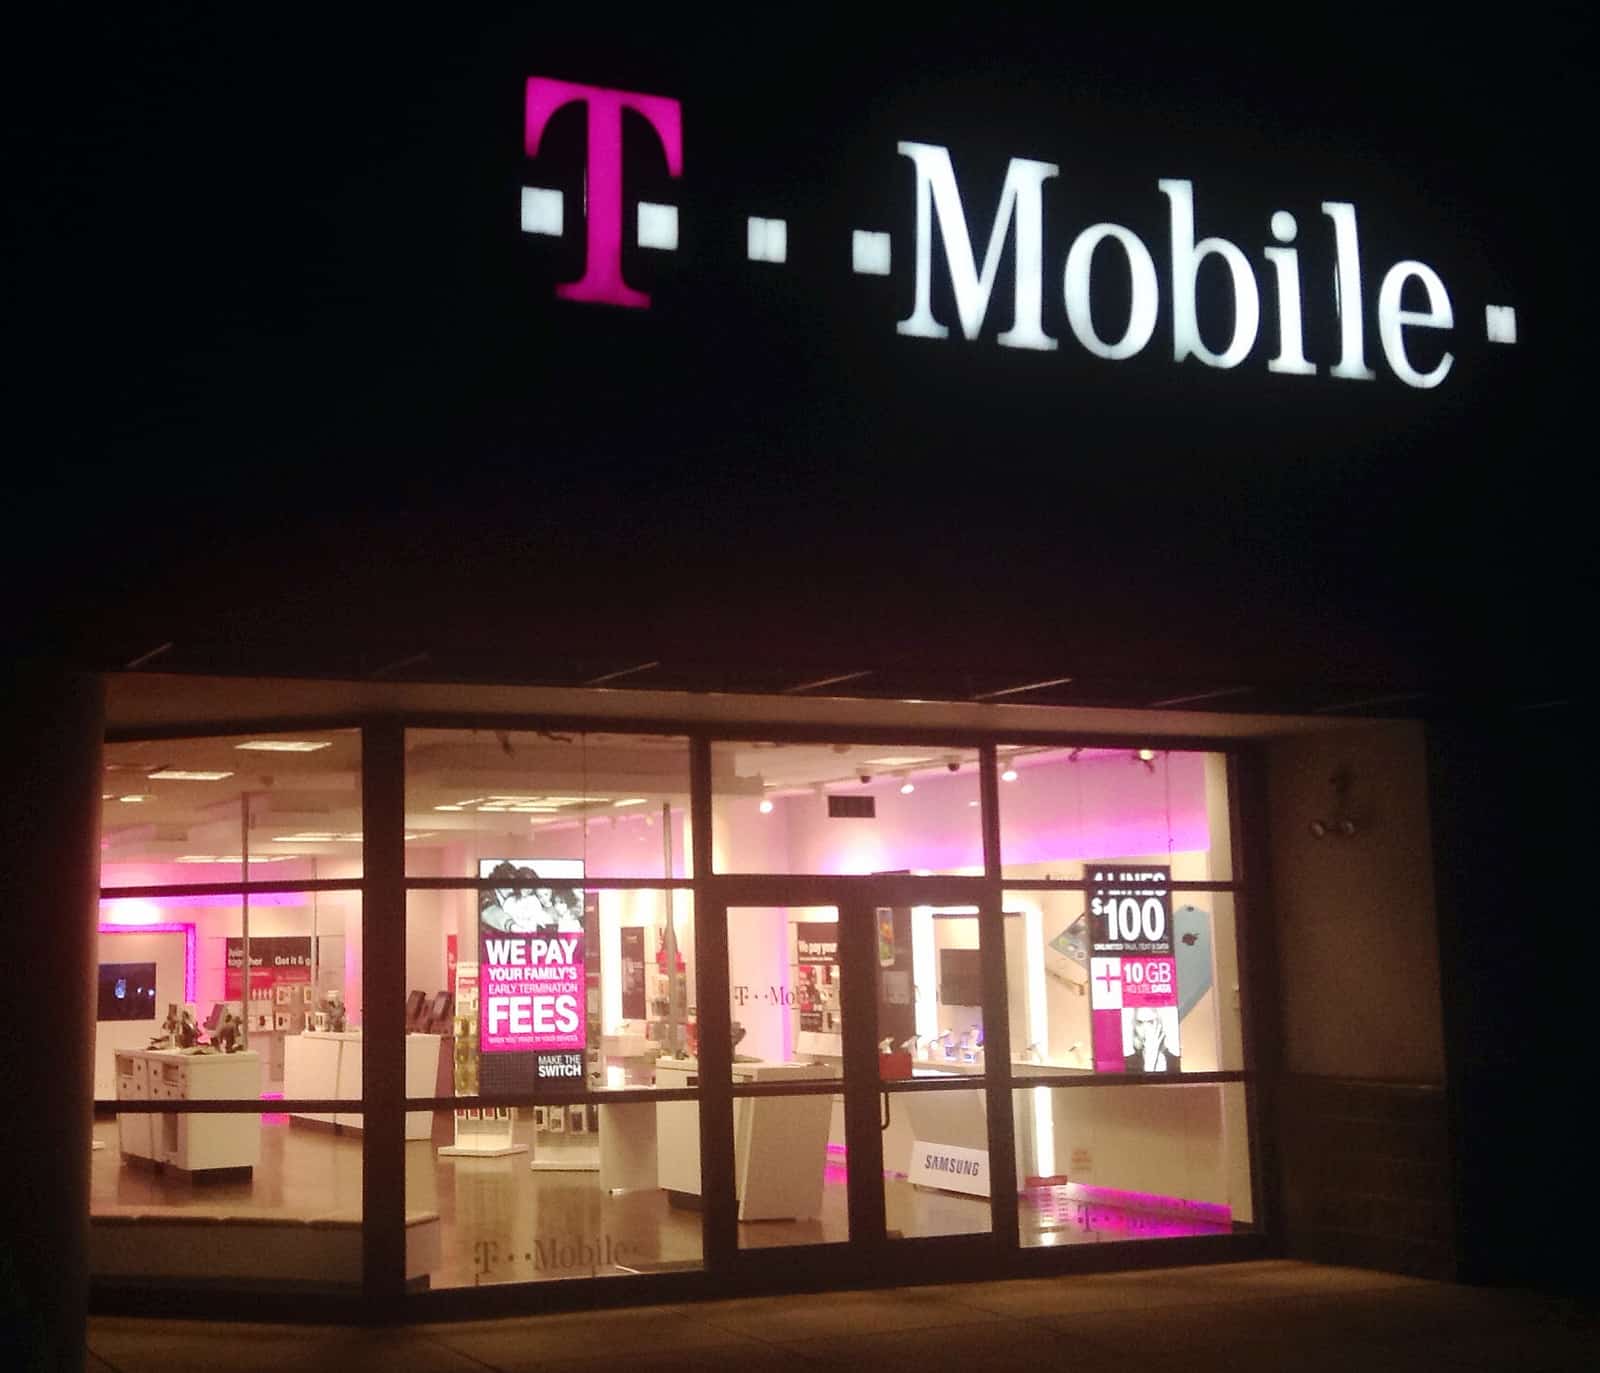 T-Mobile launching new gigabit LTE technology